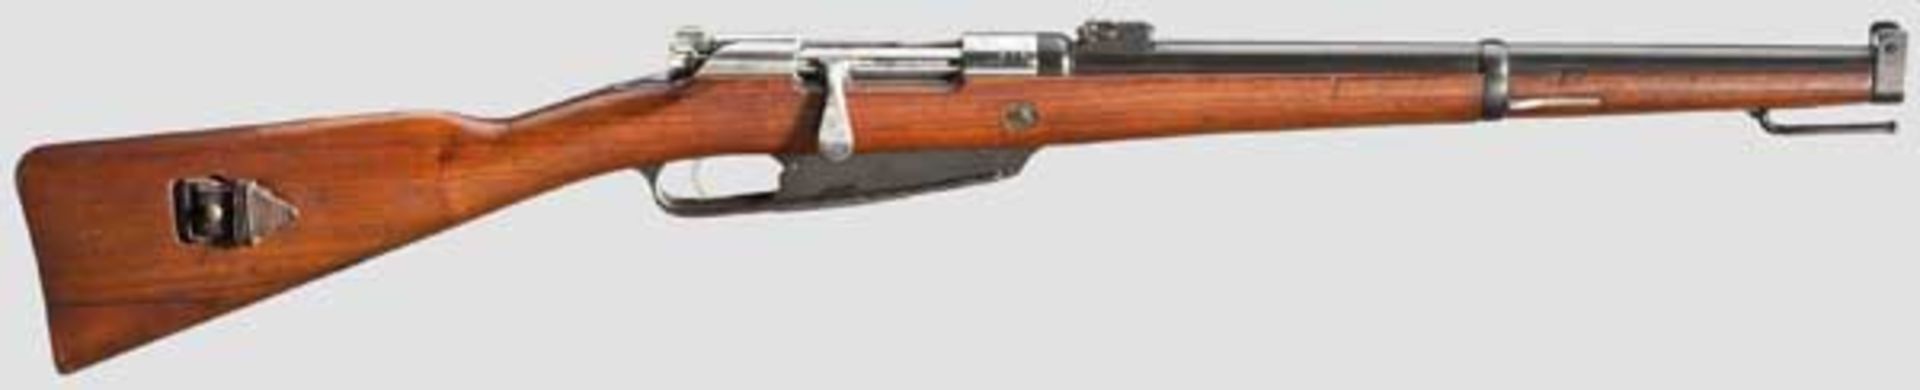 Gewehr 91, Erfurt, 1901 Kal. 8 x 57, Nr. 79. Nummerngleich. Blanker Lauf. Klappen-Rahmenvisier